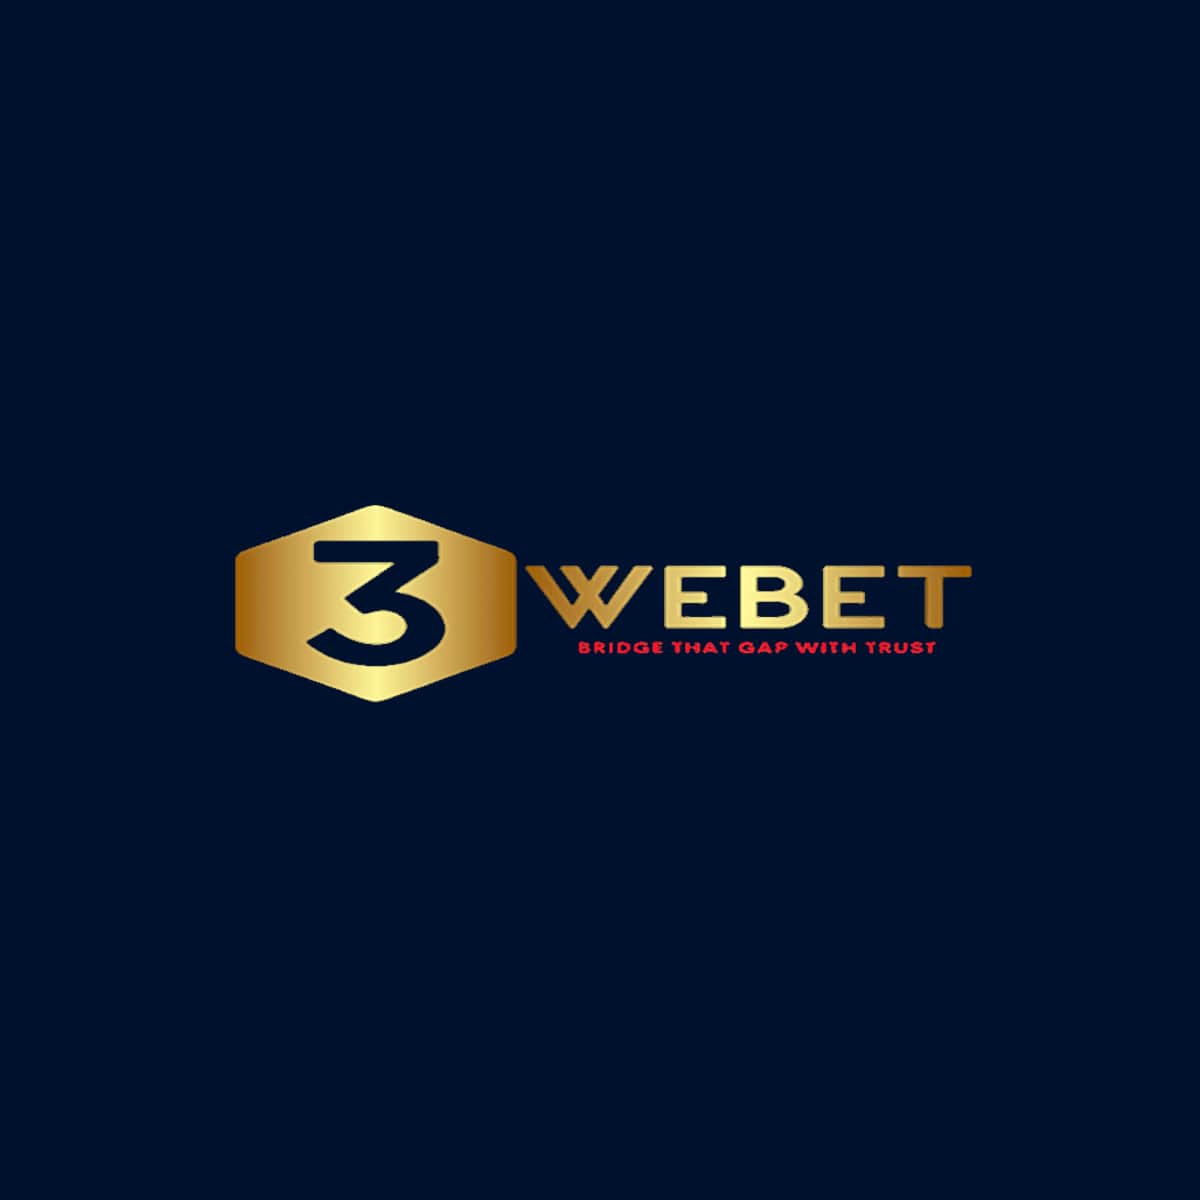 3WEBET Review Casino Singapore 2023 | SafeGaming